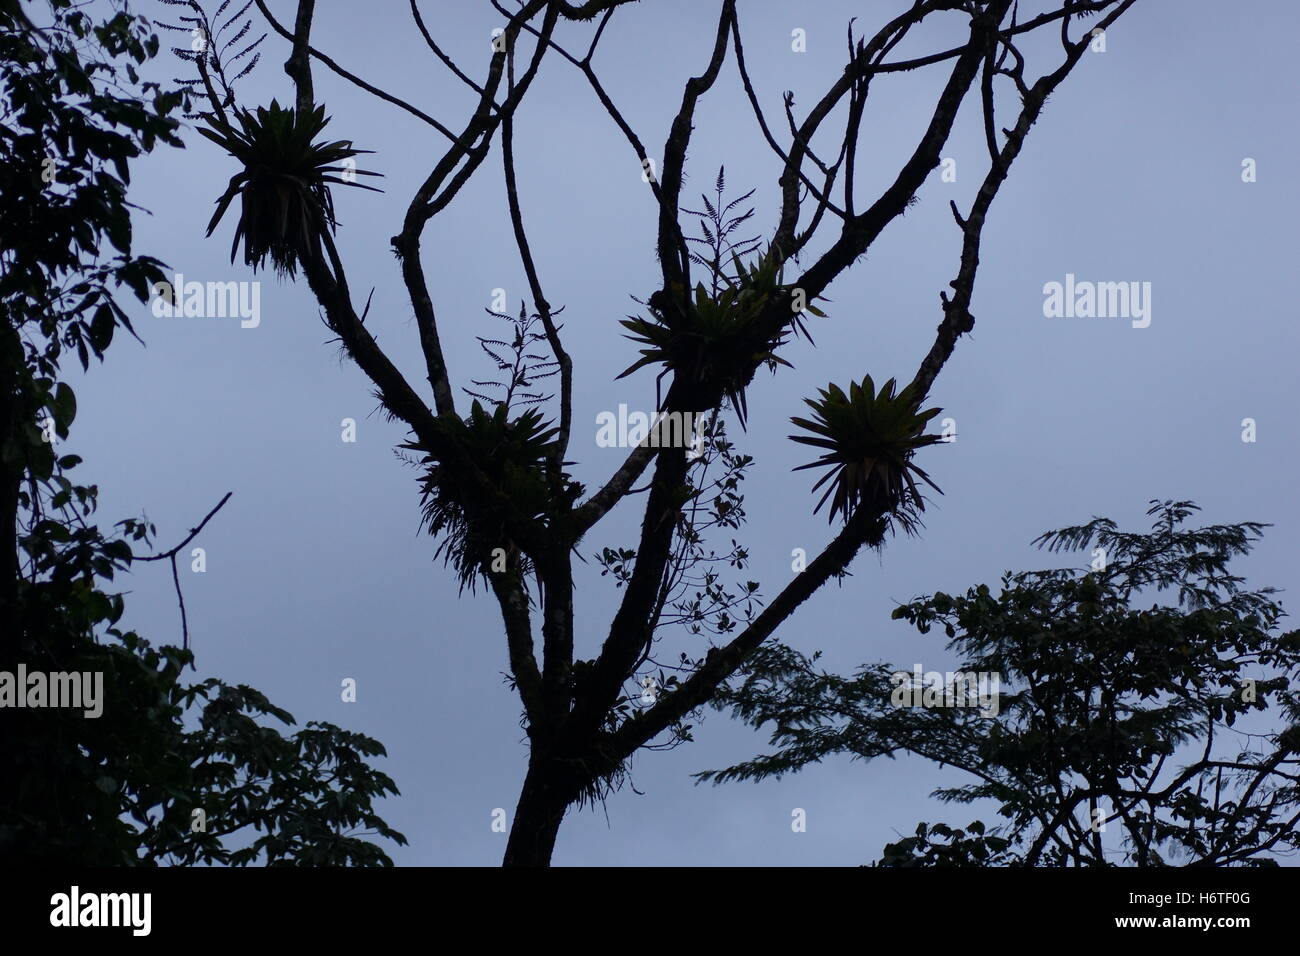 Bromeliads sur arbre. Province d'Alajuela, canton de San Carlos, Arenal, Costa Rica. Parc national de l'Arenal Volcano Banque D'Images